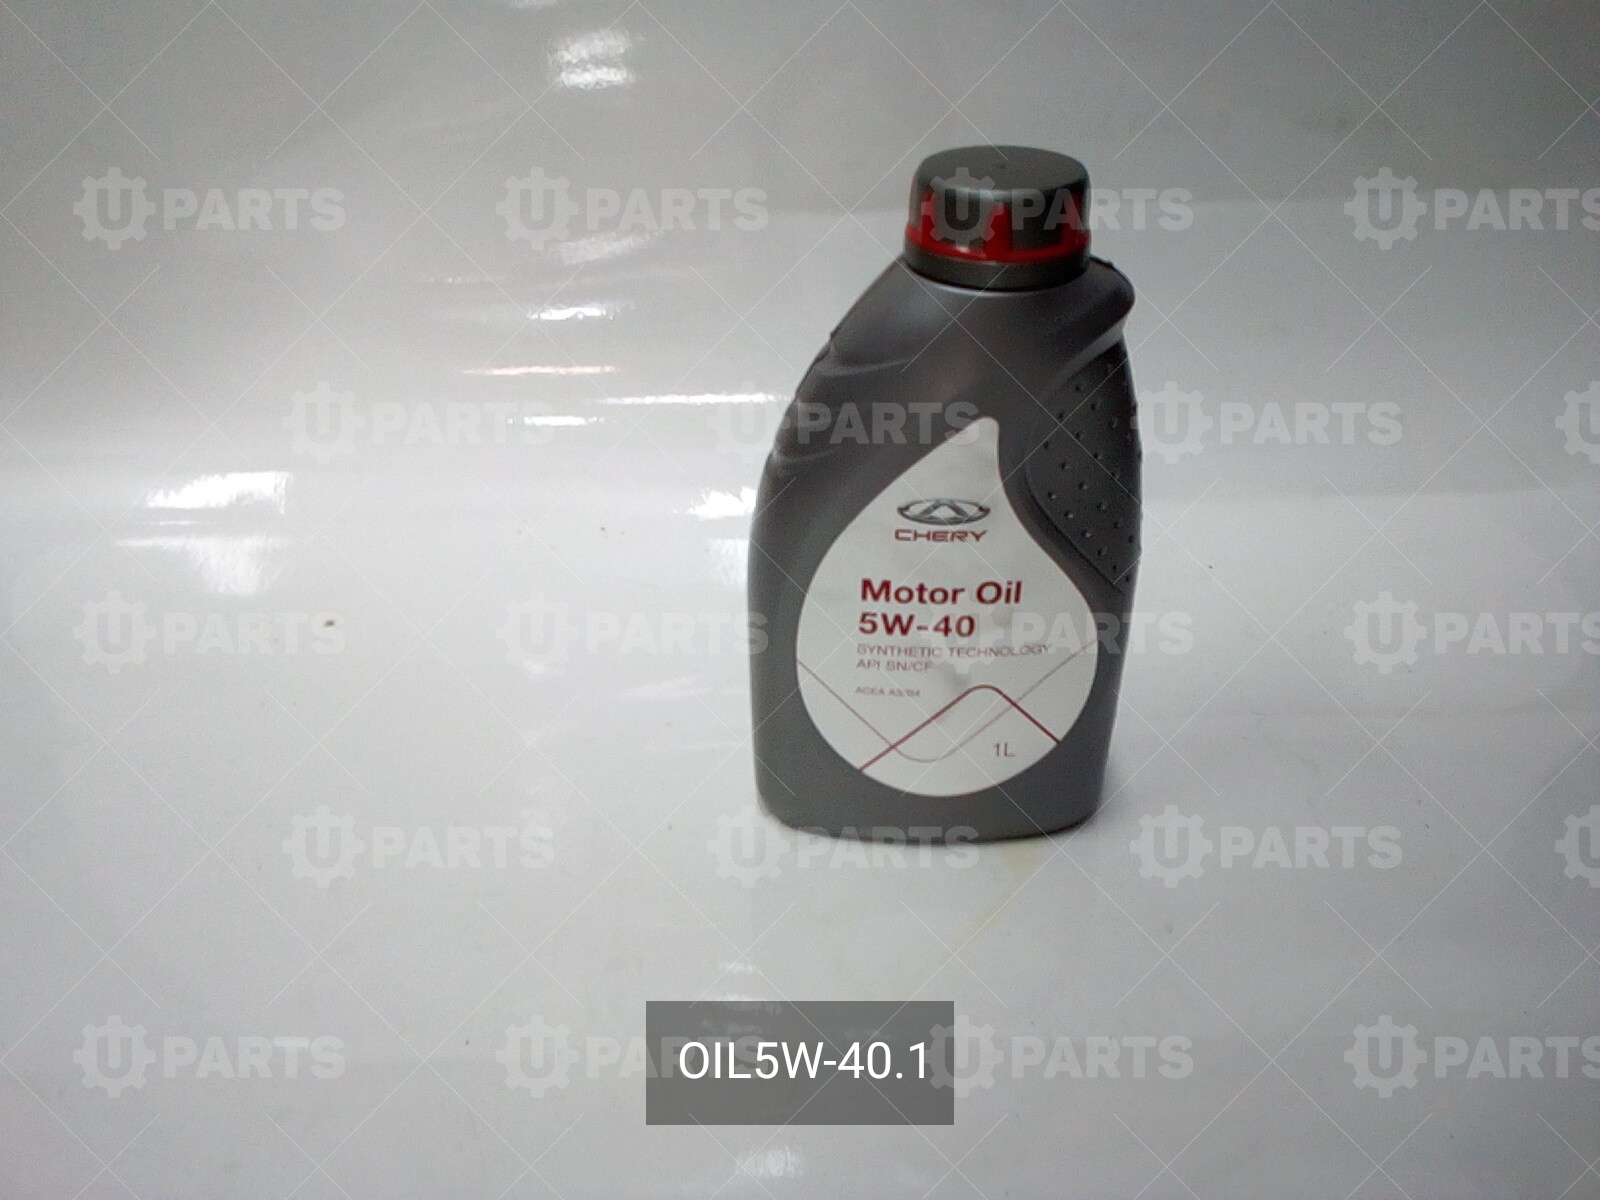 Масло chery oil. Chery Motor Oil 5w40. Chery Oil 5w-40. Chery Motor Oil 5w-40 SN/CF. Масло Chery Motor Oil 5w-40.